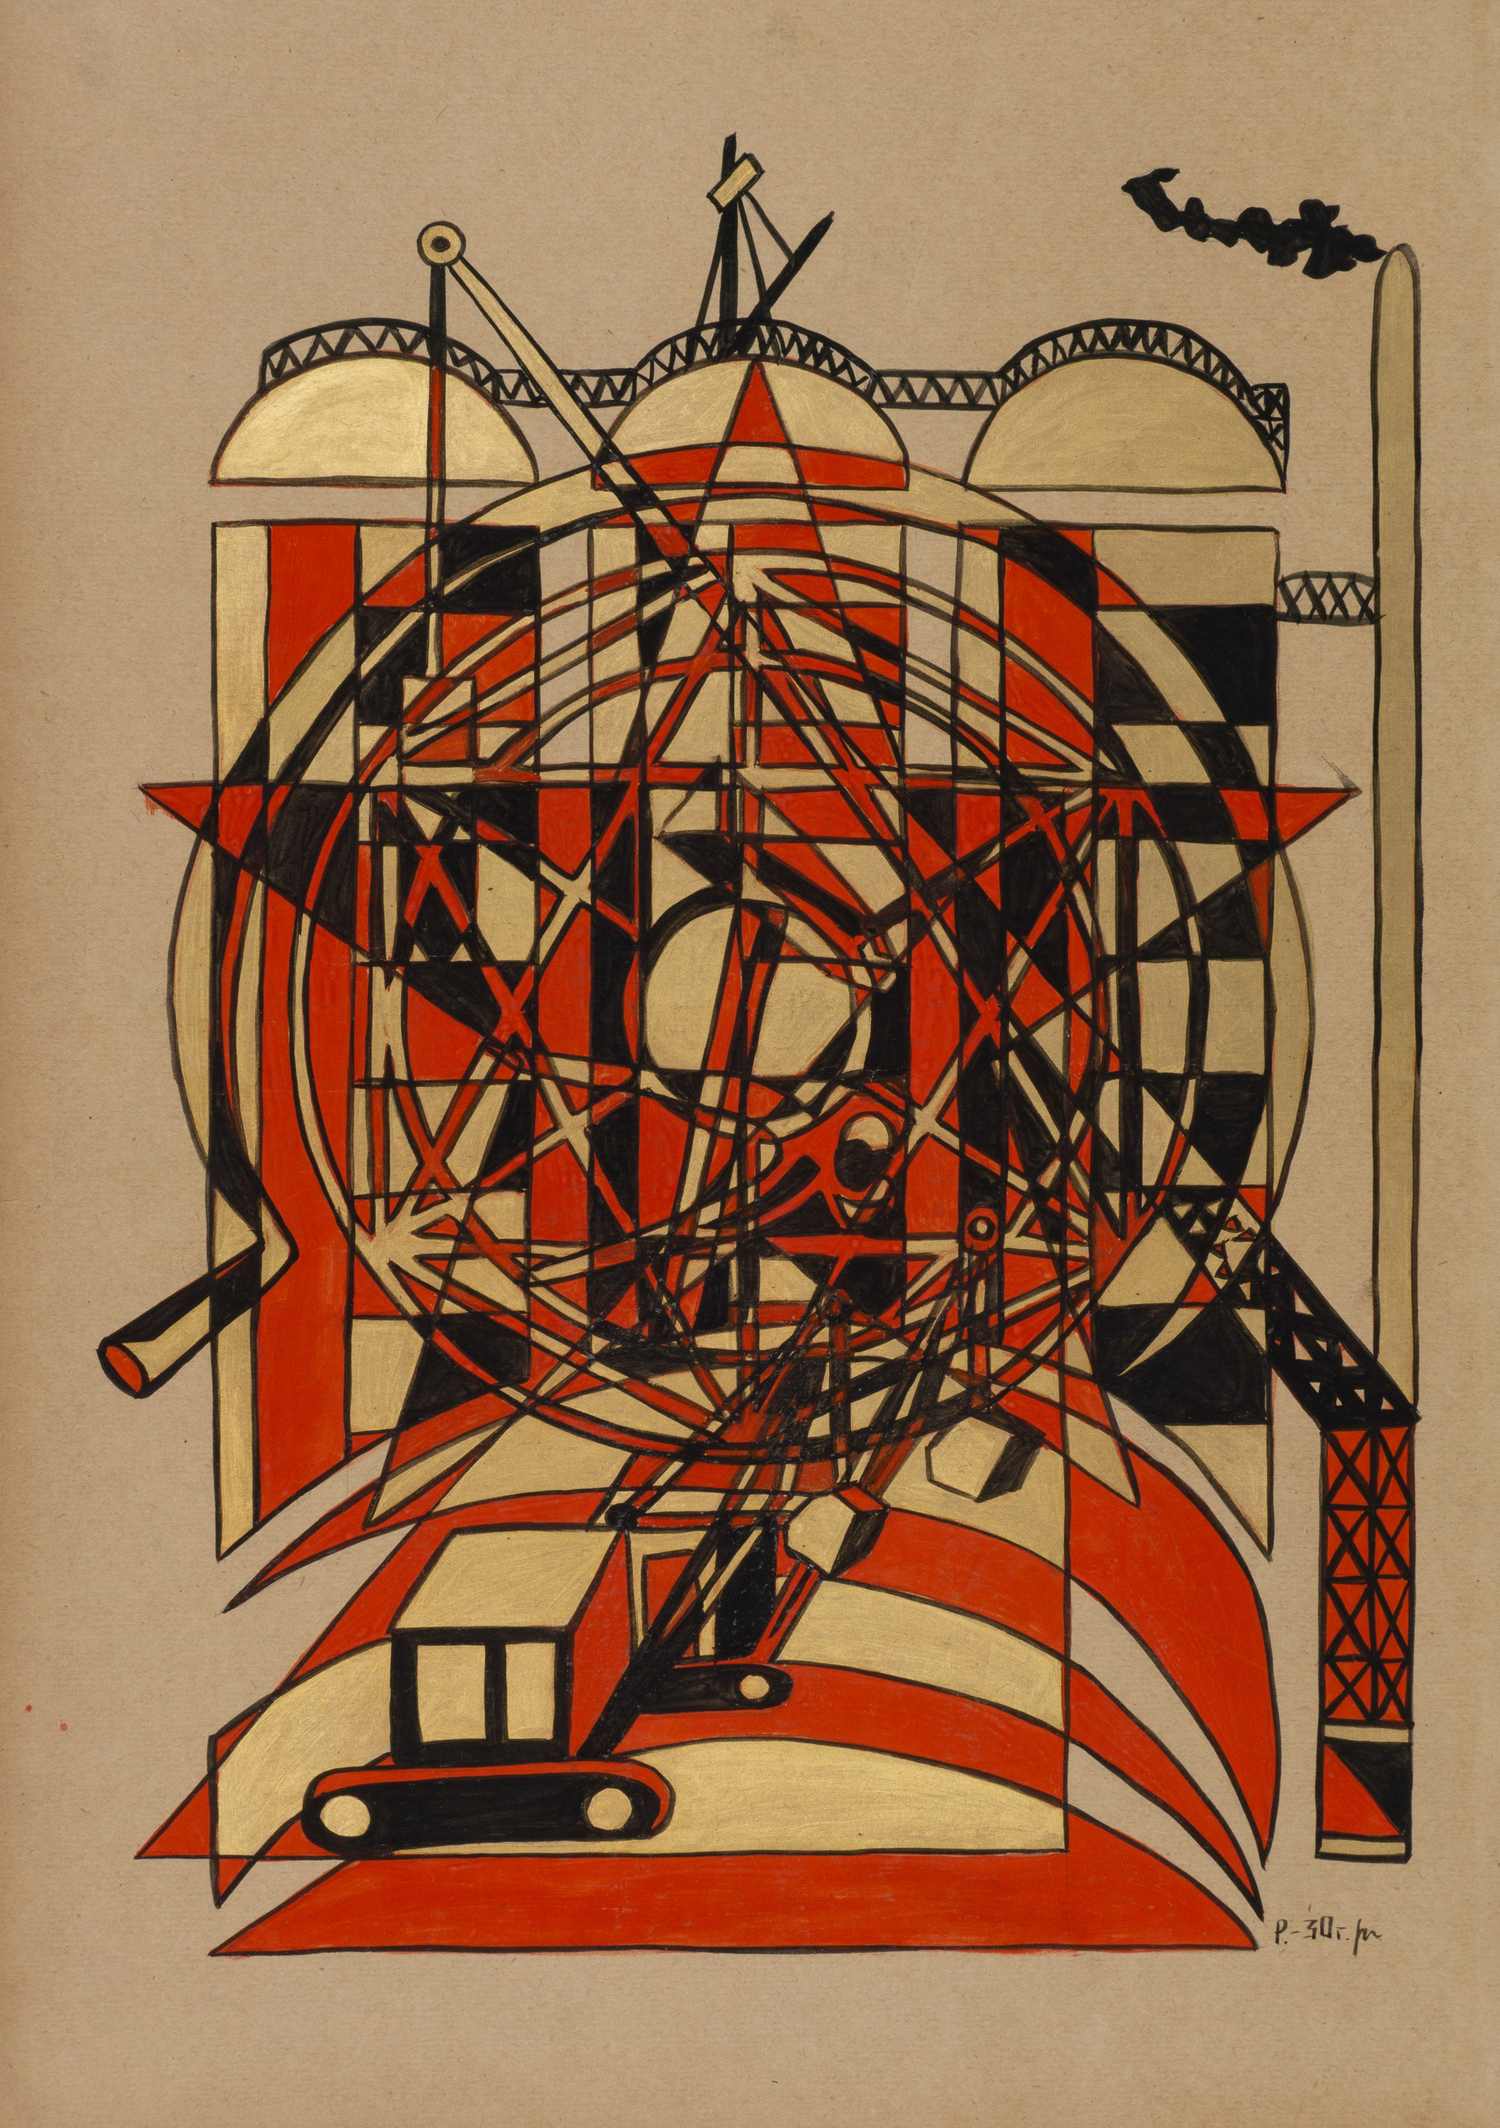 Неизвестный художник (Рабинович Розалия Моисеевна по подписи). Промышленная композиция. 1930.